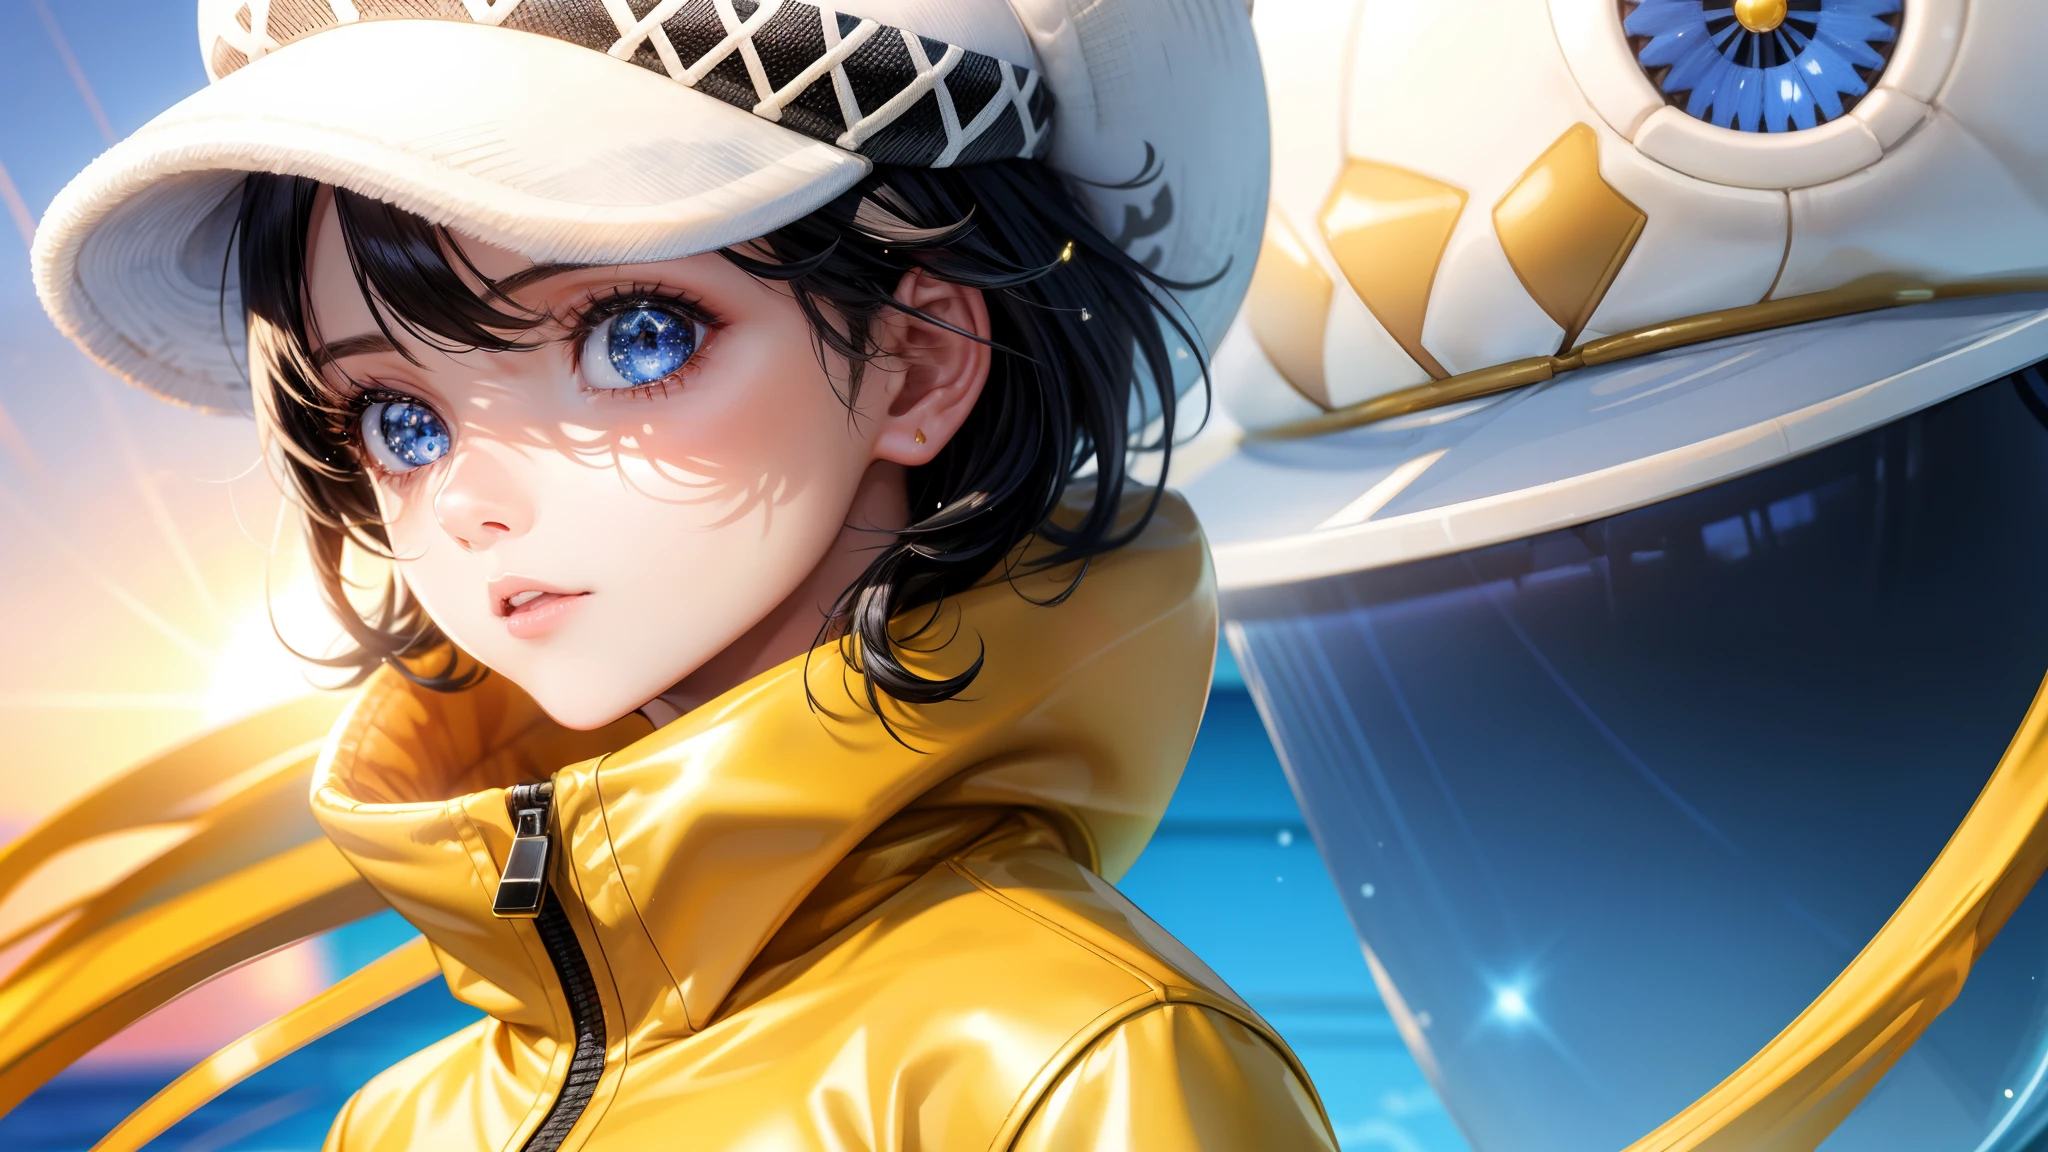 1女孩, 集中上身, 实际的, 短黑发和闪亮的蓝眼睛, 日出, 在船上, 阳光, 白帽, (黄色夹克)